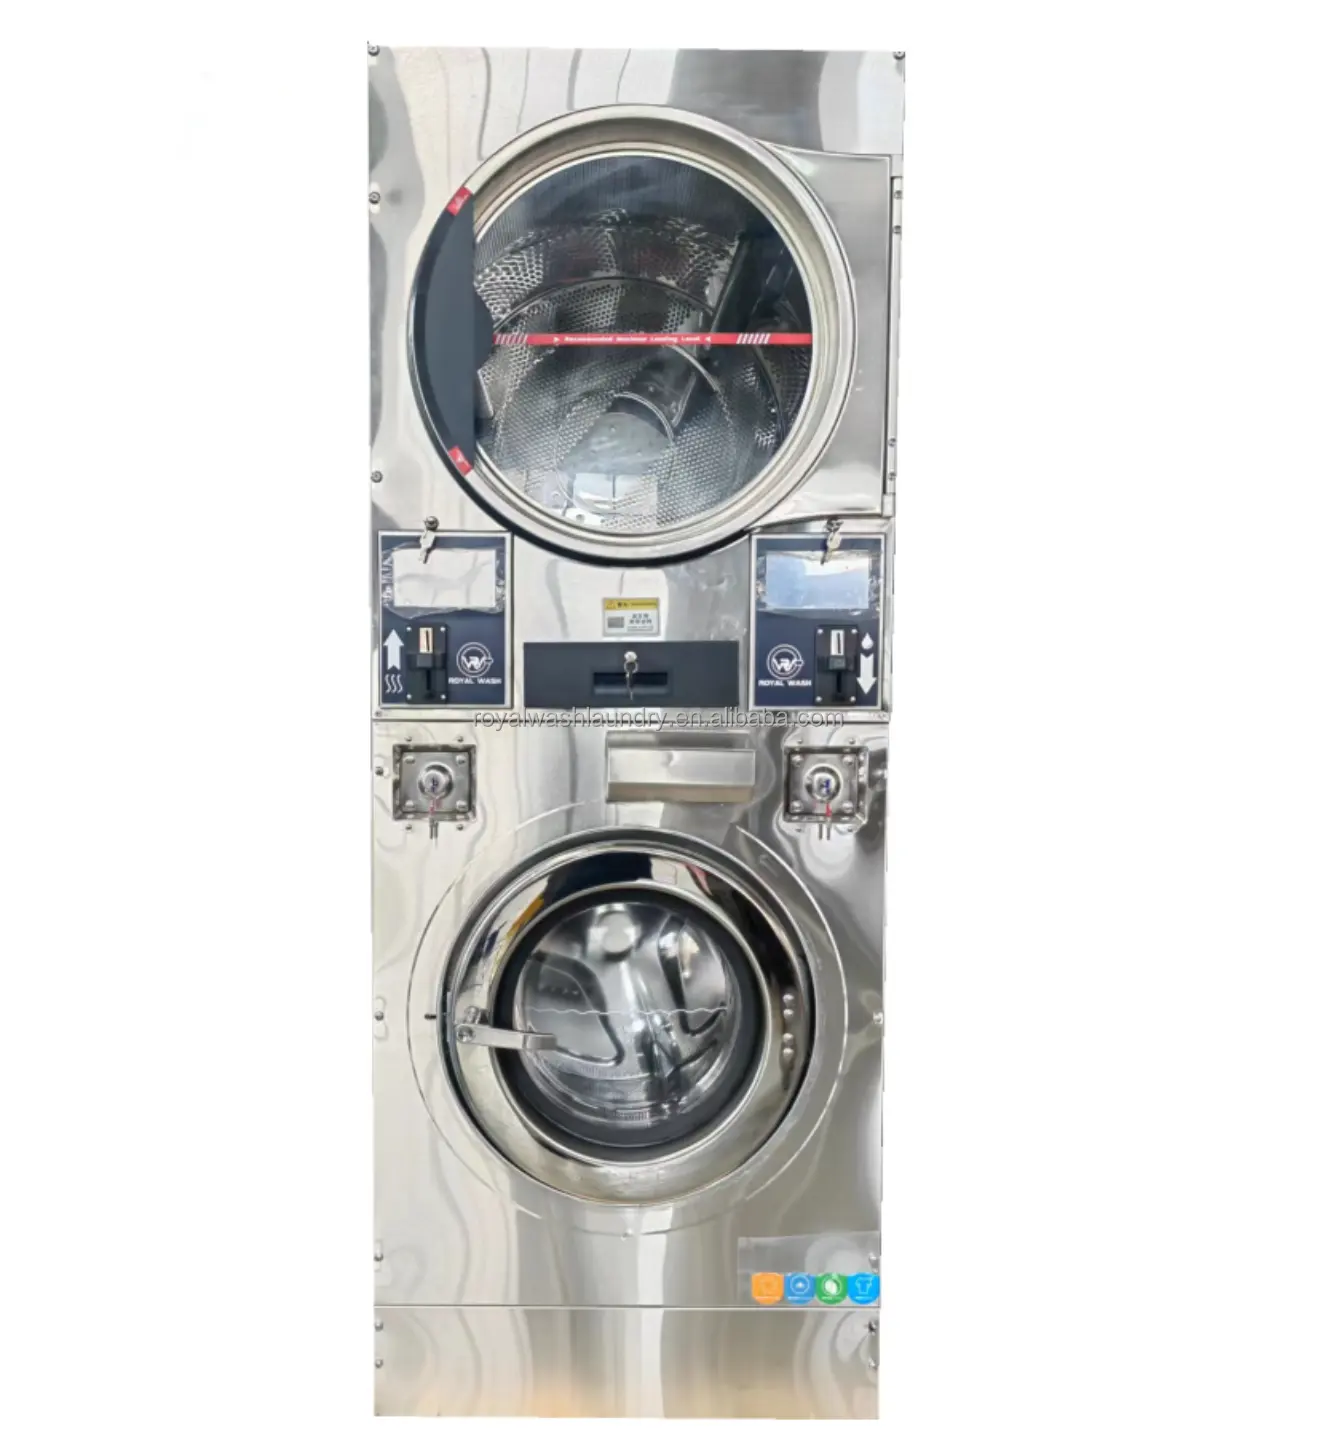 インバータ駆動システムとドア開放自動停止検知機能を採用商用洗濯スタック洗濯乾燥機